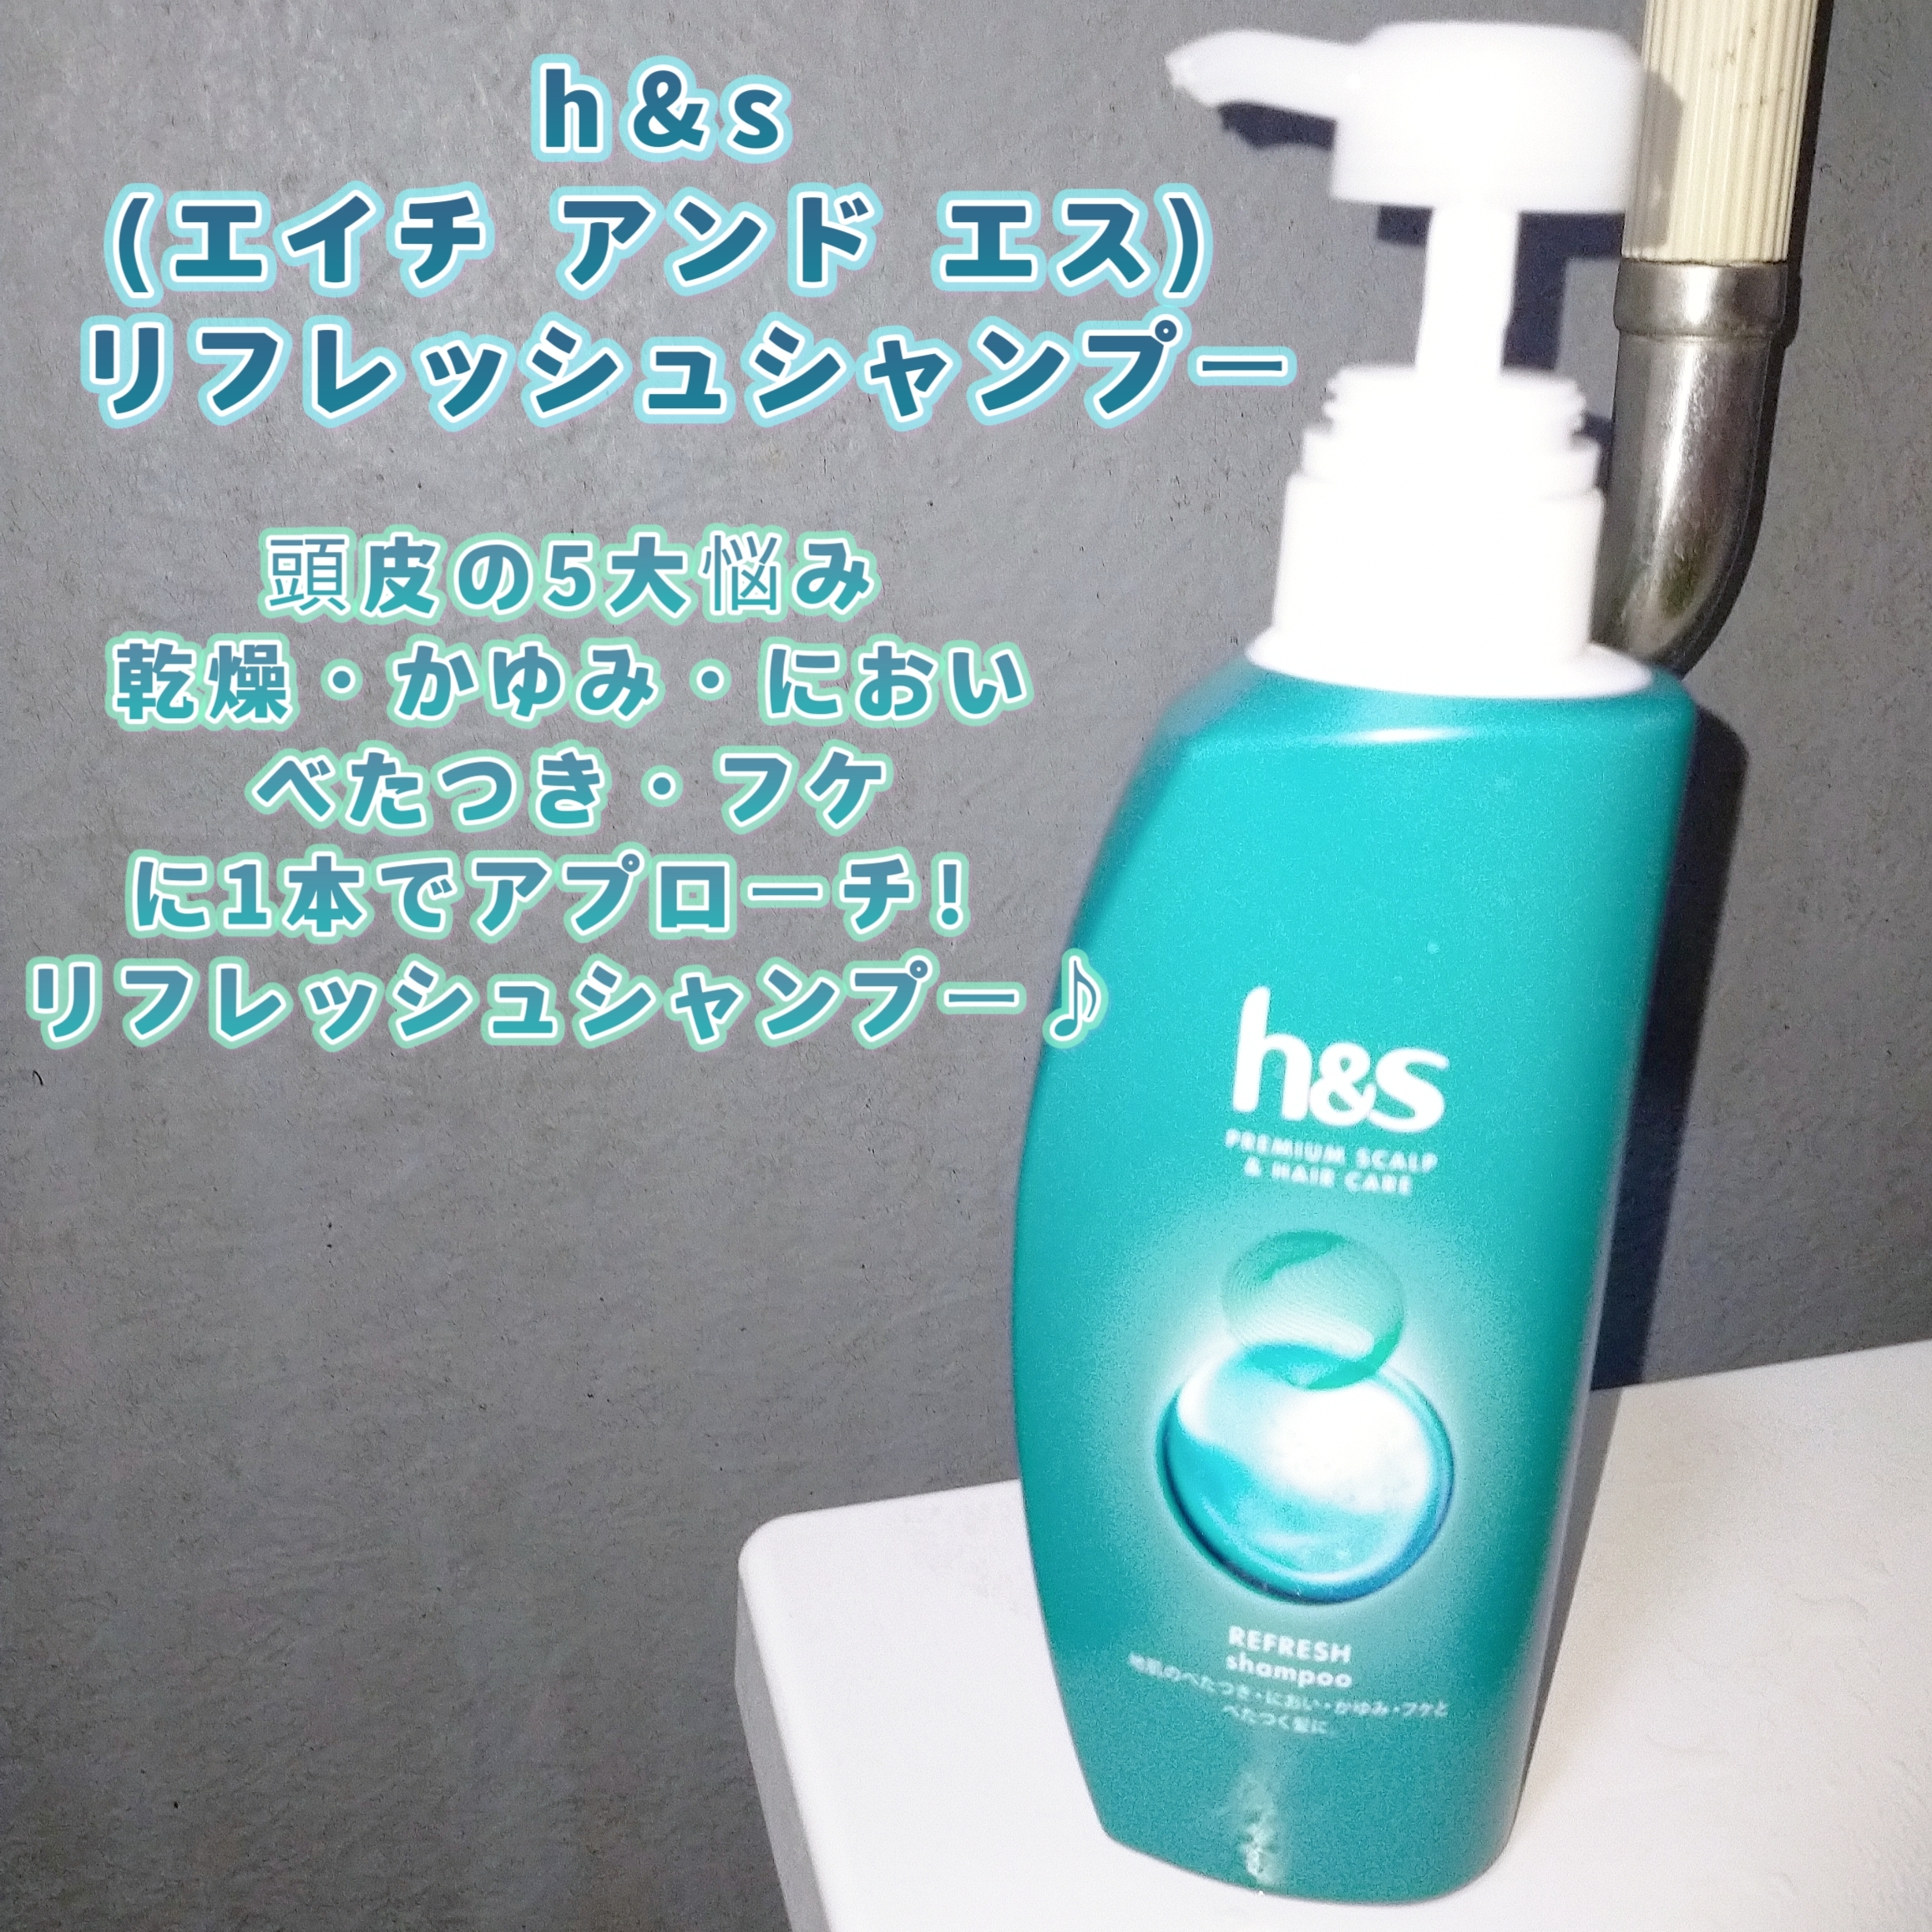 h&s(エイチアンドエス) リフレッシュシリーズ 地肌と髪のシャンプーの良い点・メリットに関するみこさんの口コミ画像1